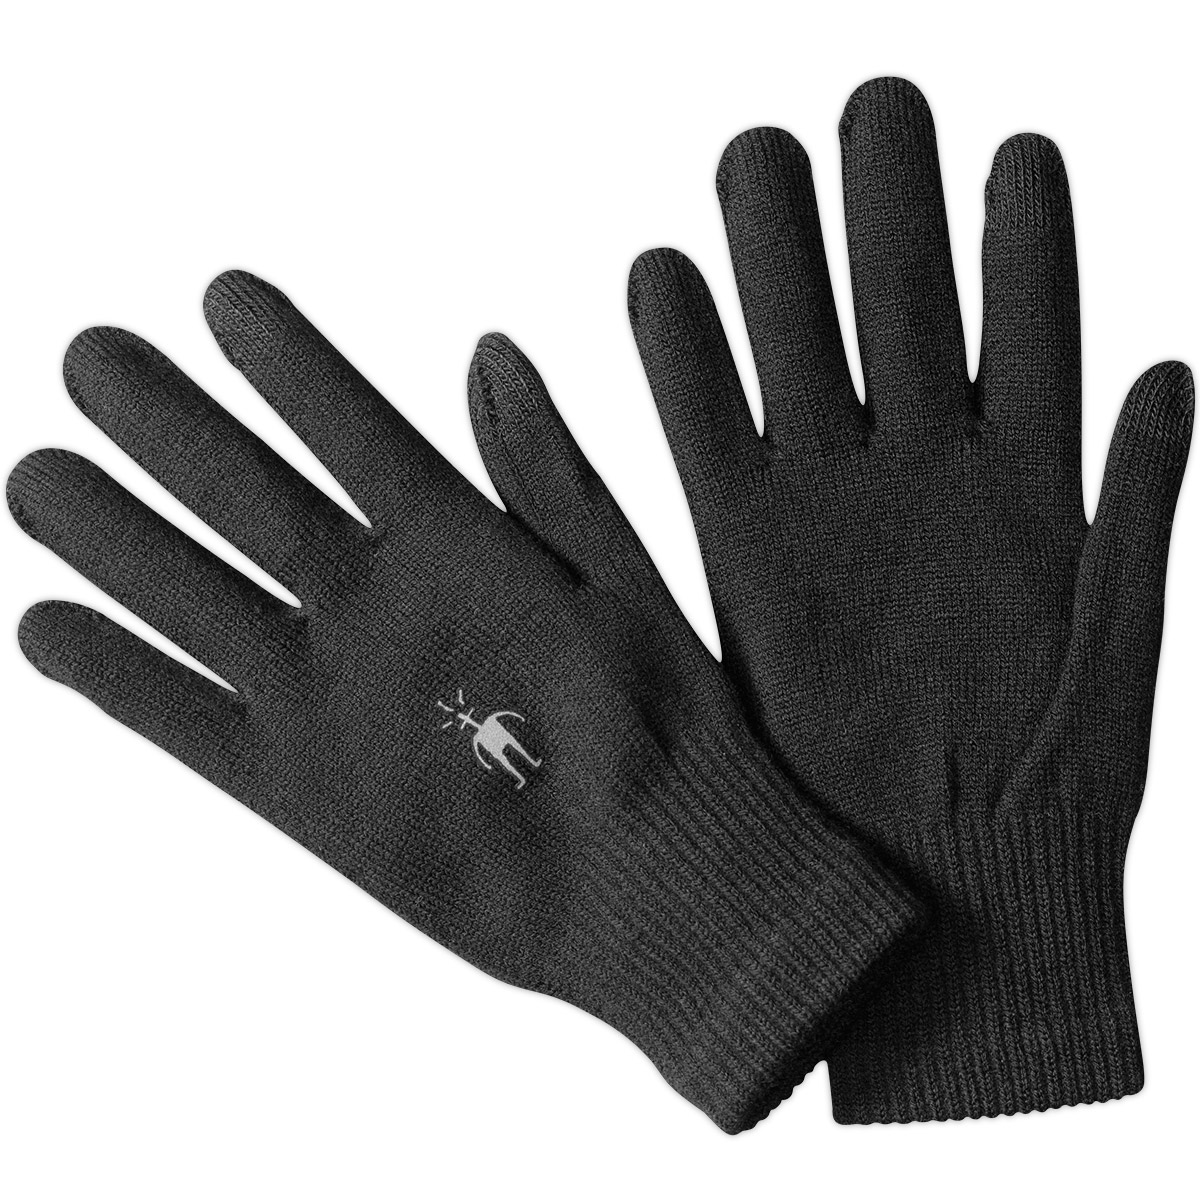 Smartwool Liner Gloves - Black, XS